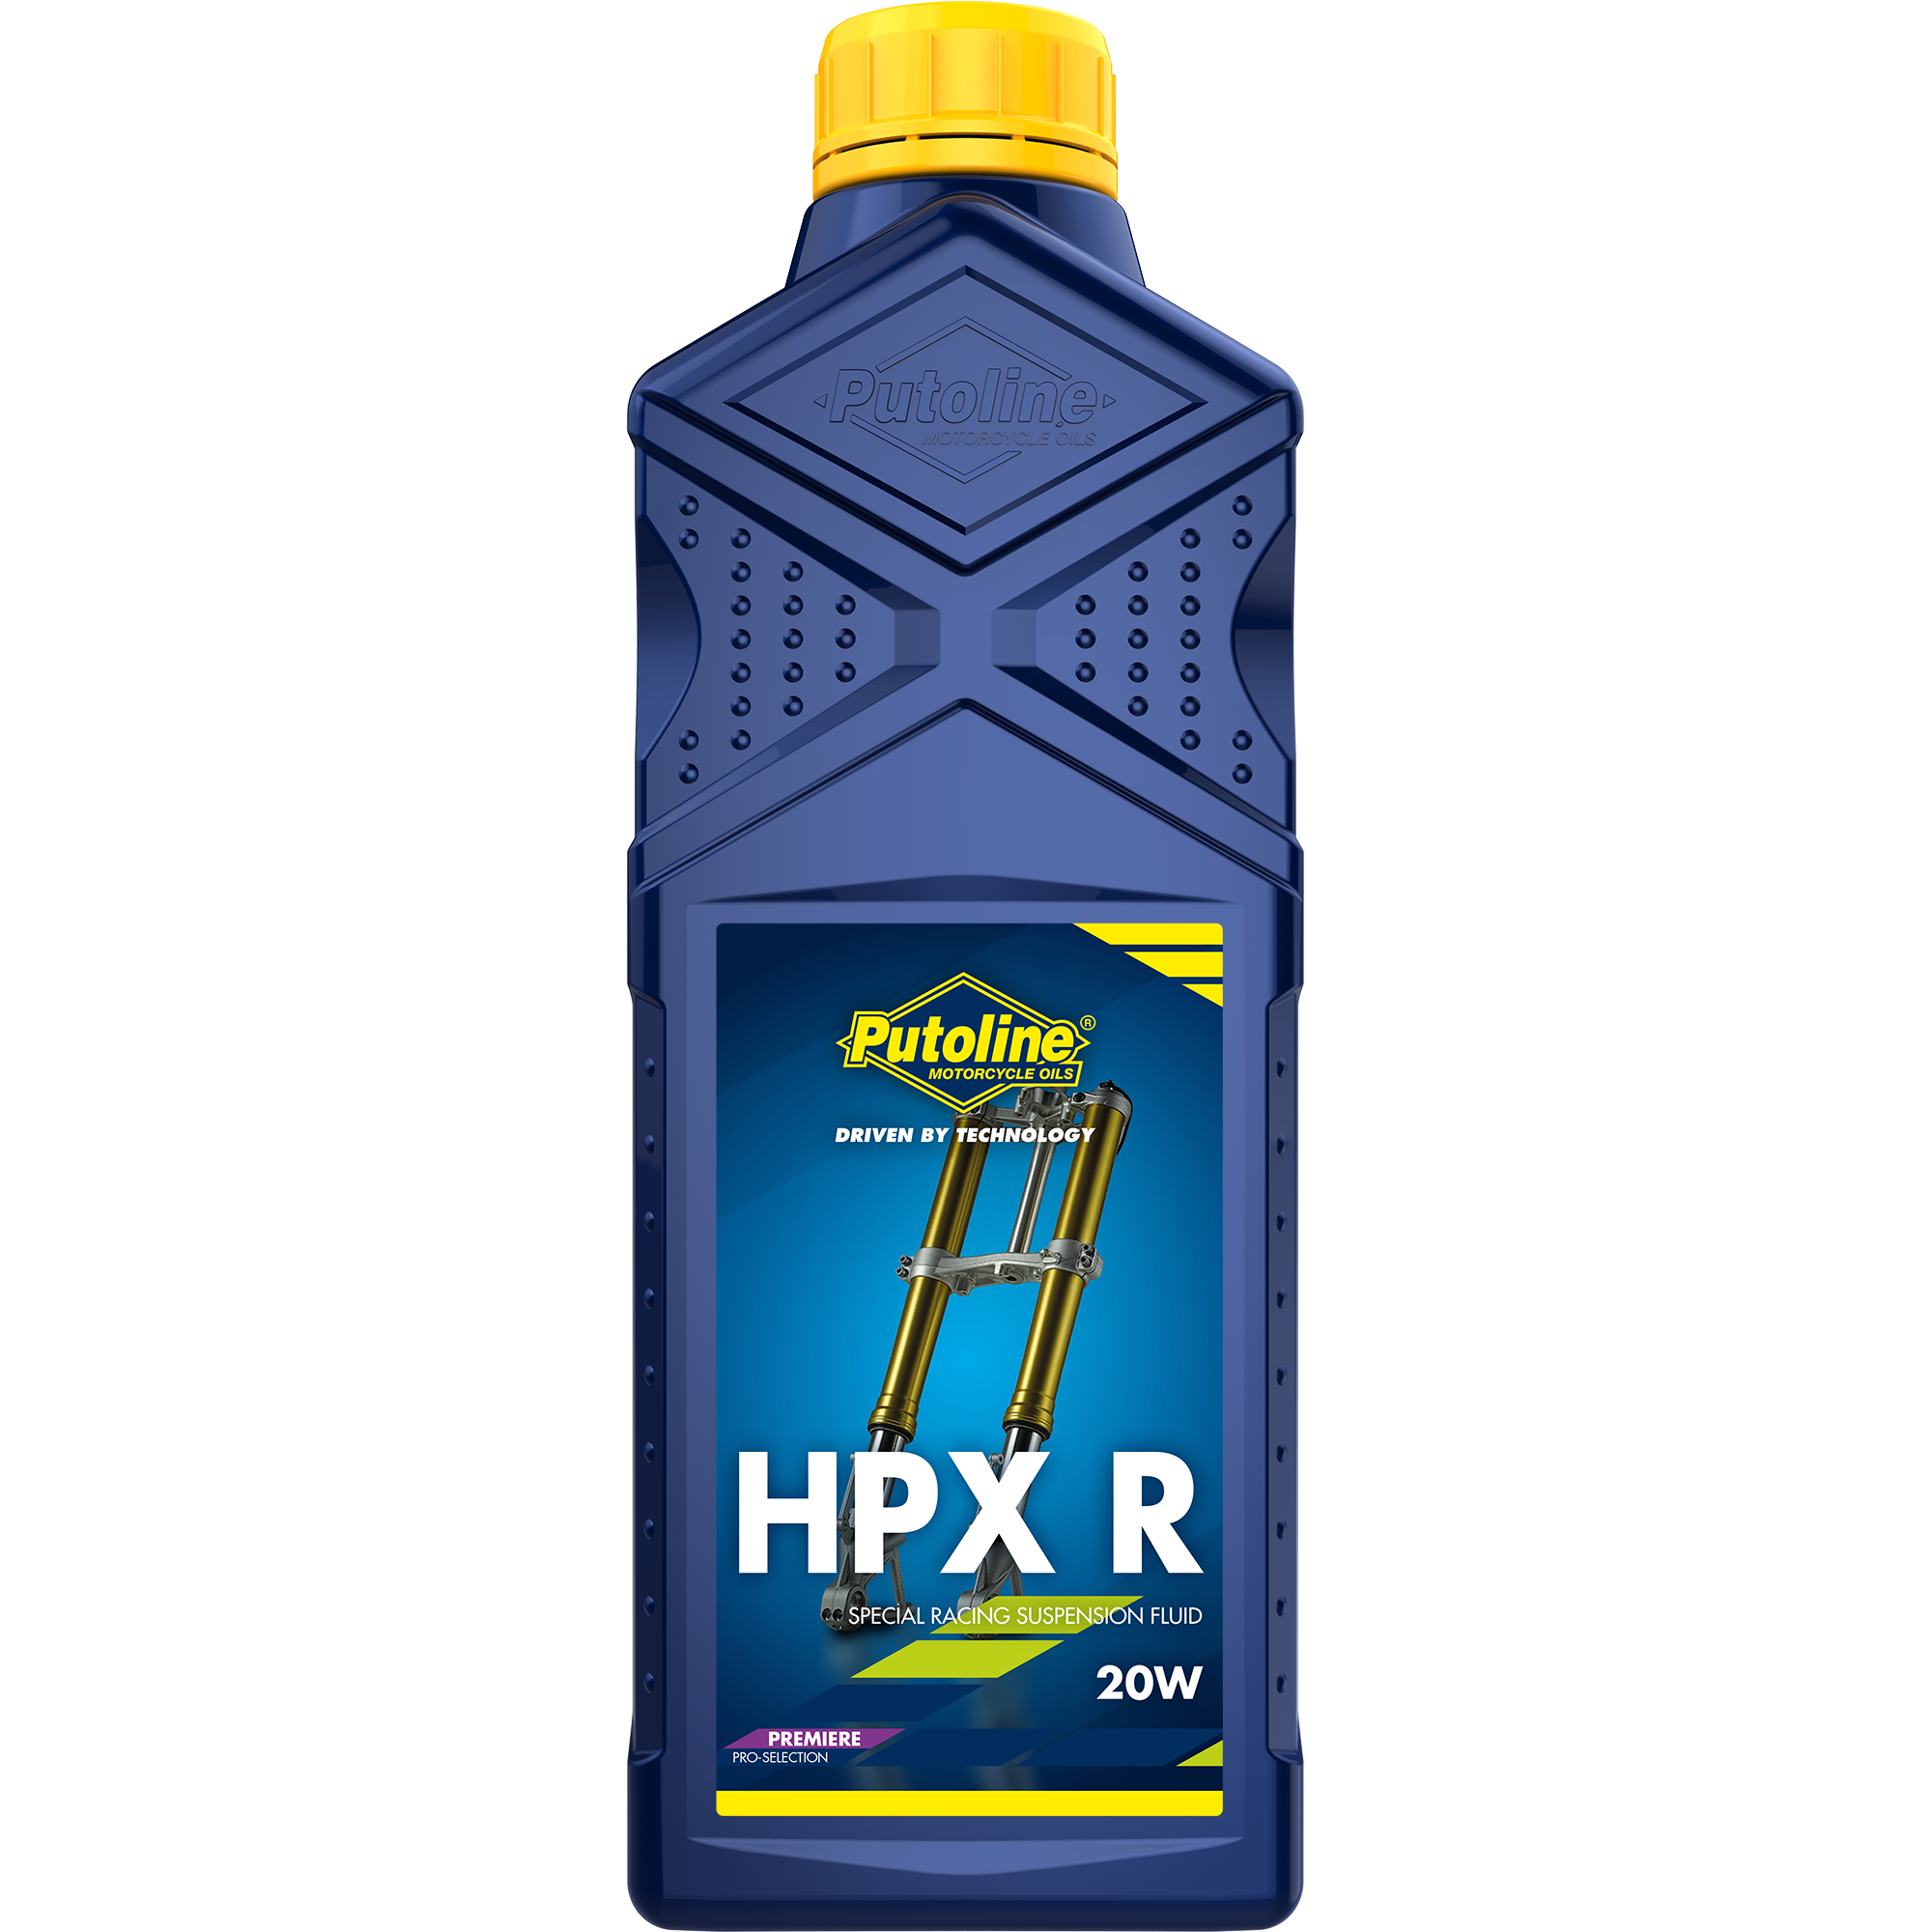 Putoline HPX R 20W, 1 lt (OUTLET)